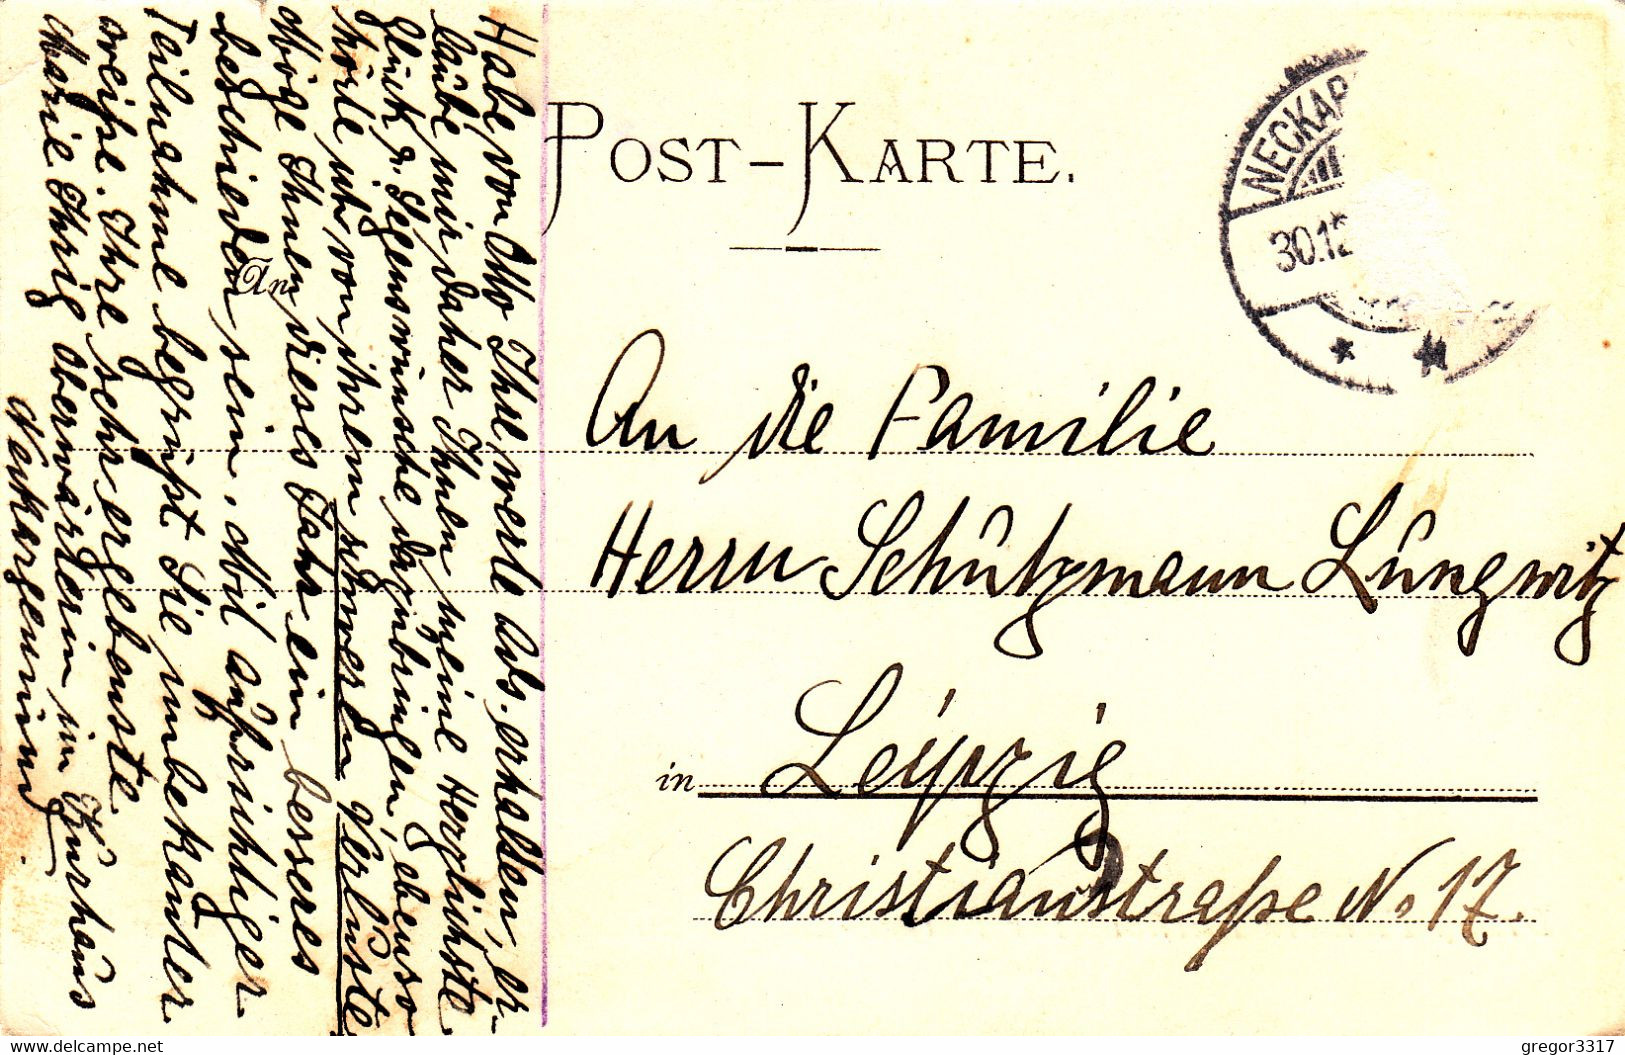 3165) NECKARGEMÜND - Dr. R. Fischers Kurhaus Für Nerven- Und Gemütskranke - S/W LITHO 1905 - Neckargemünd